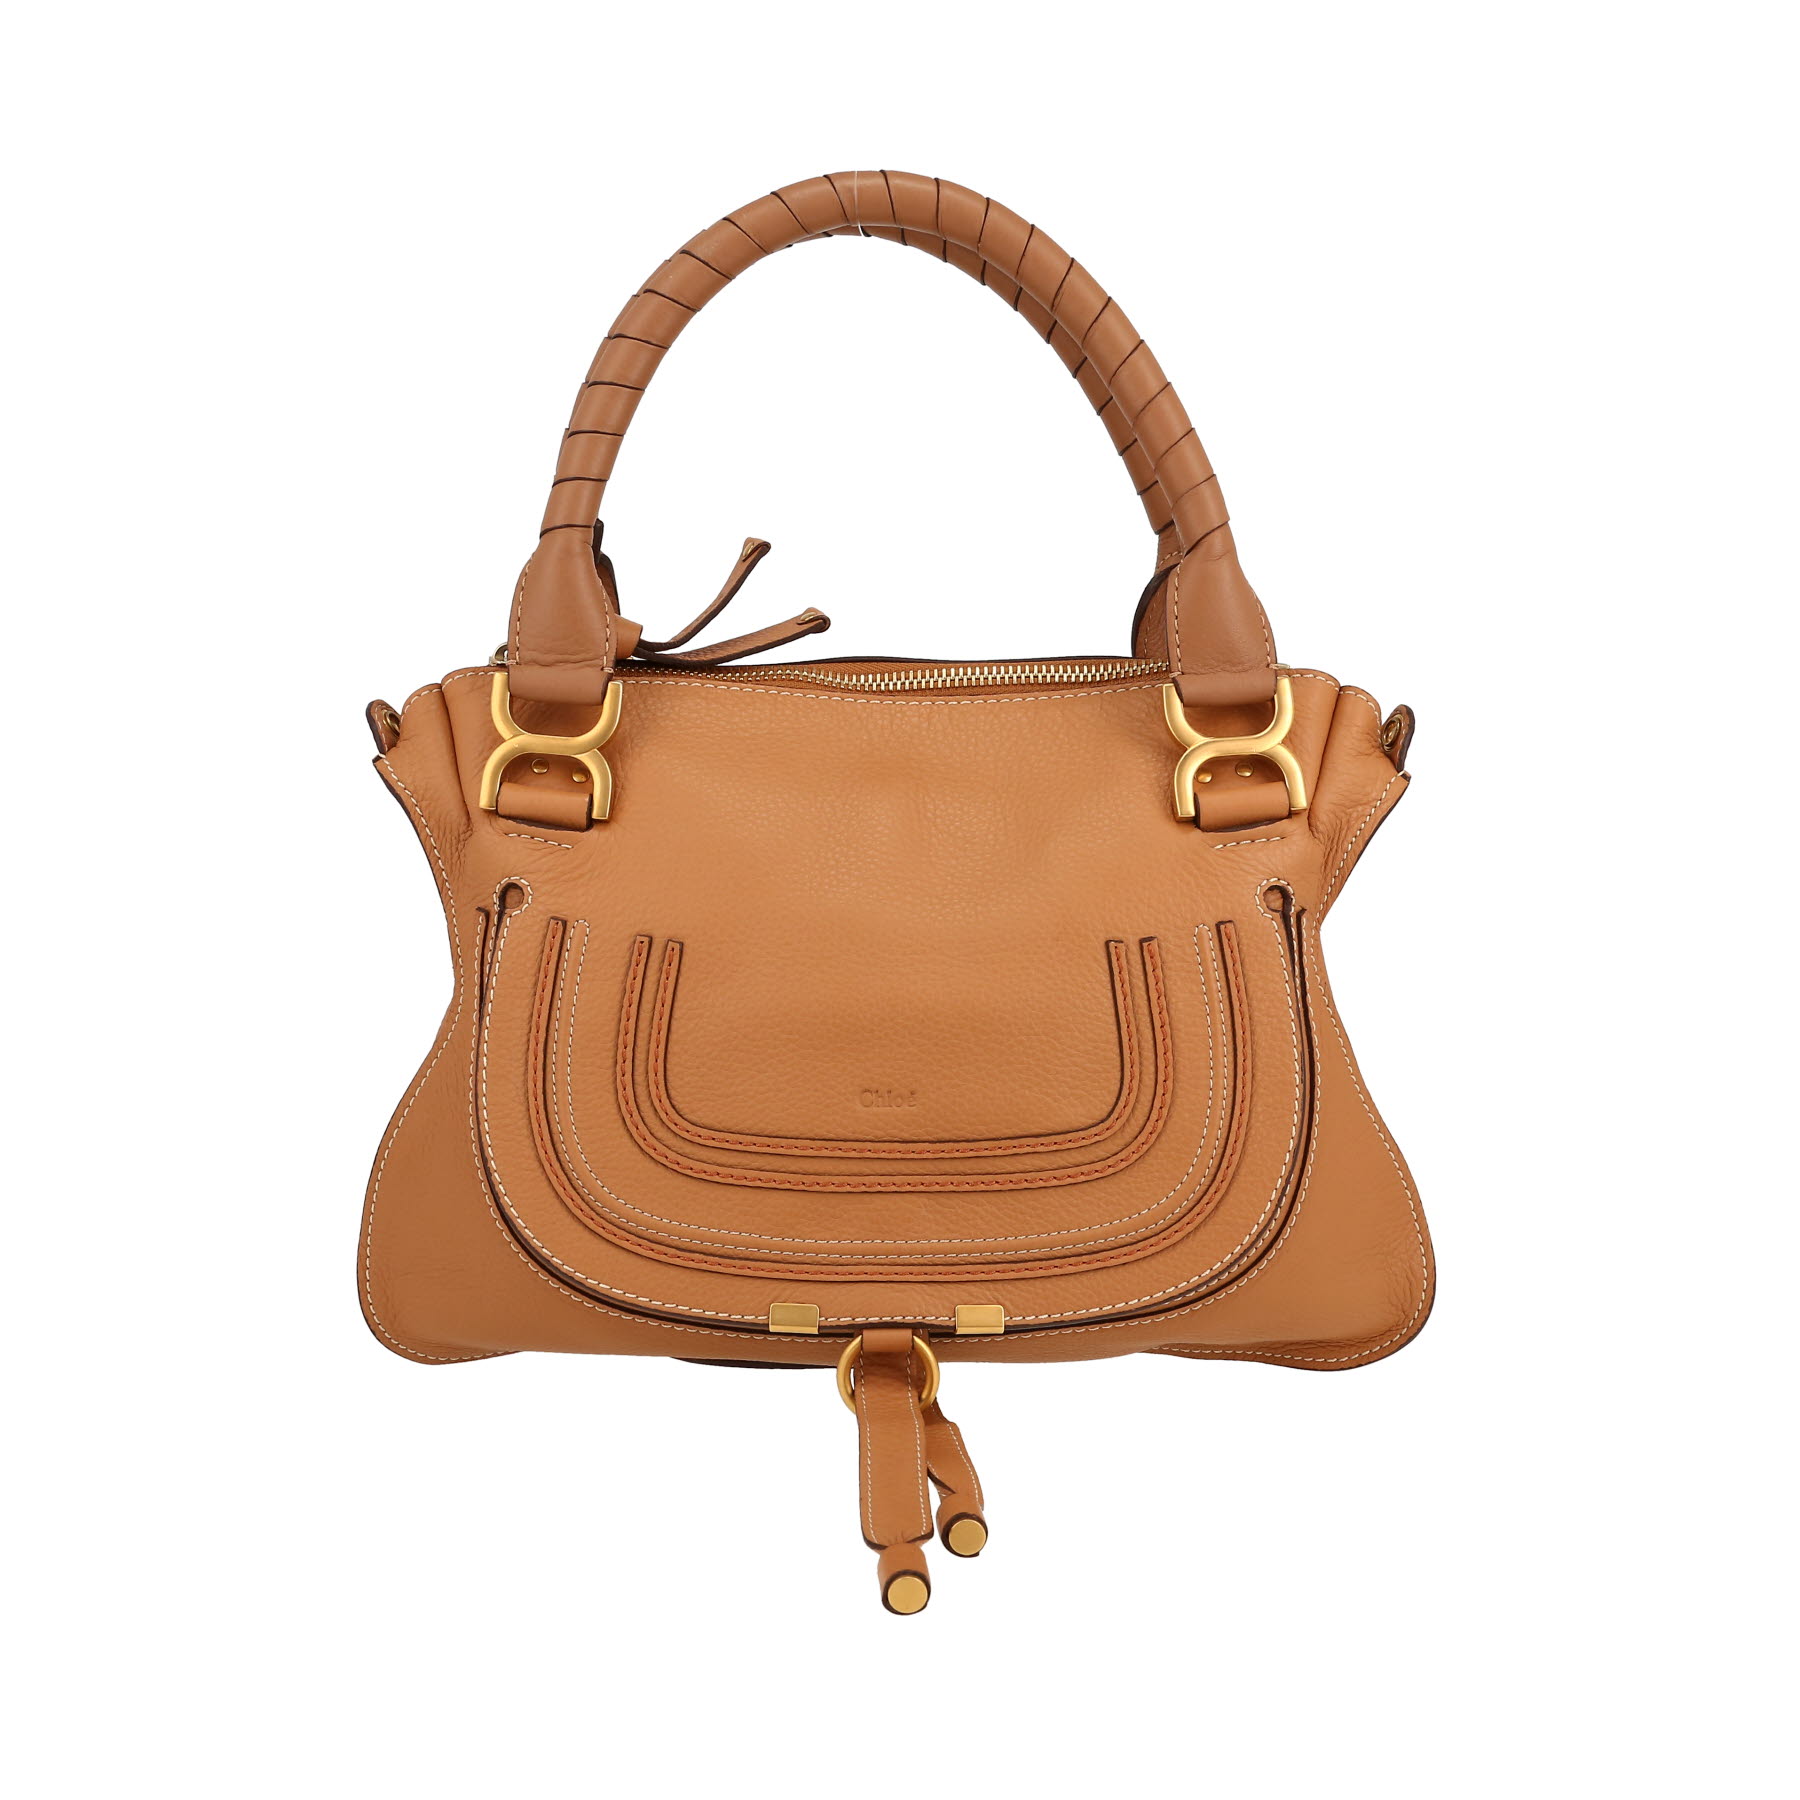 Marcie Handbag In Brown Leather